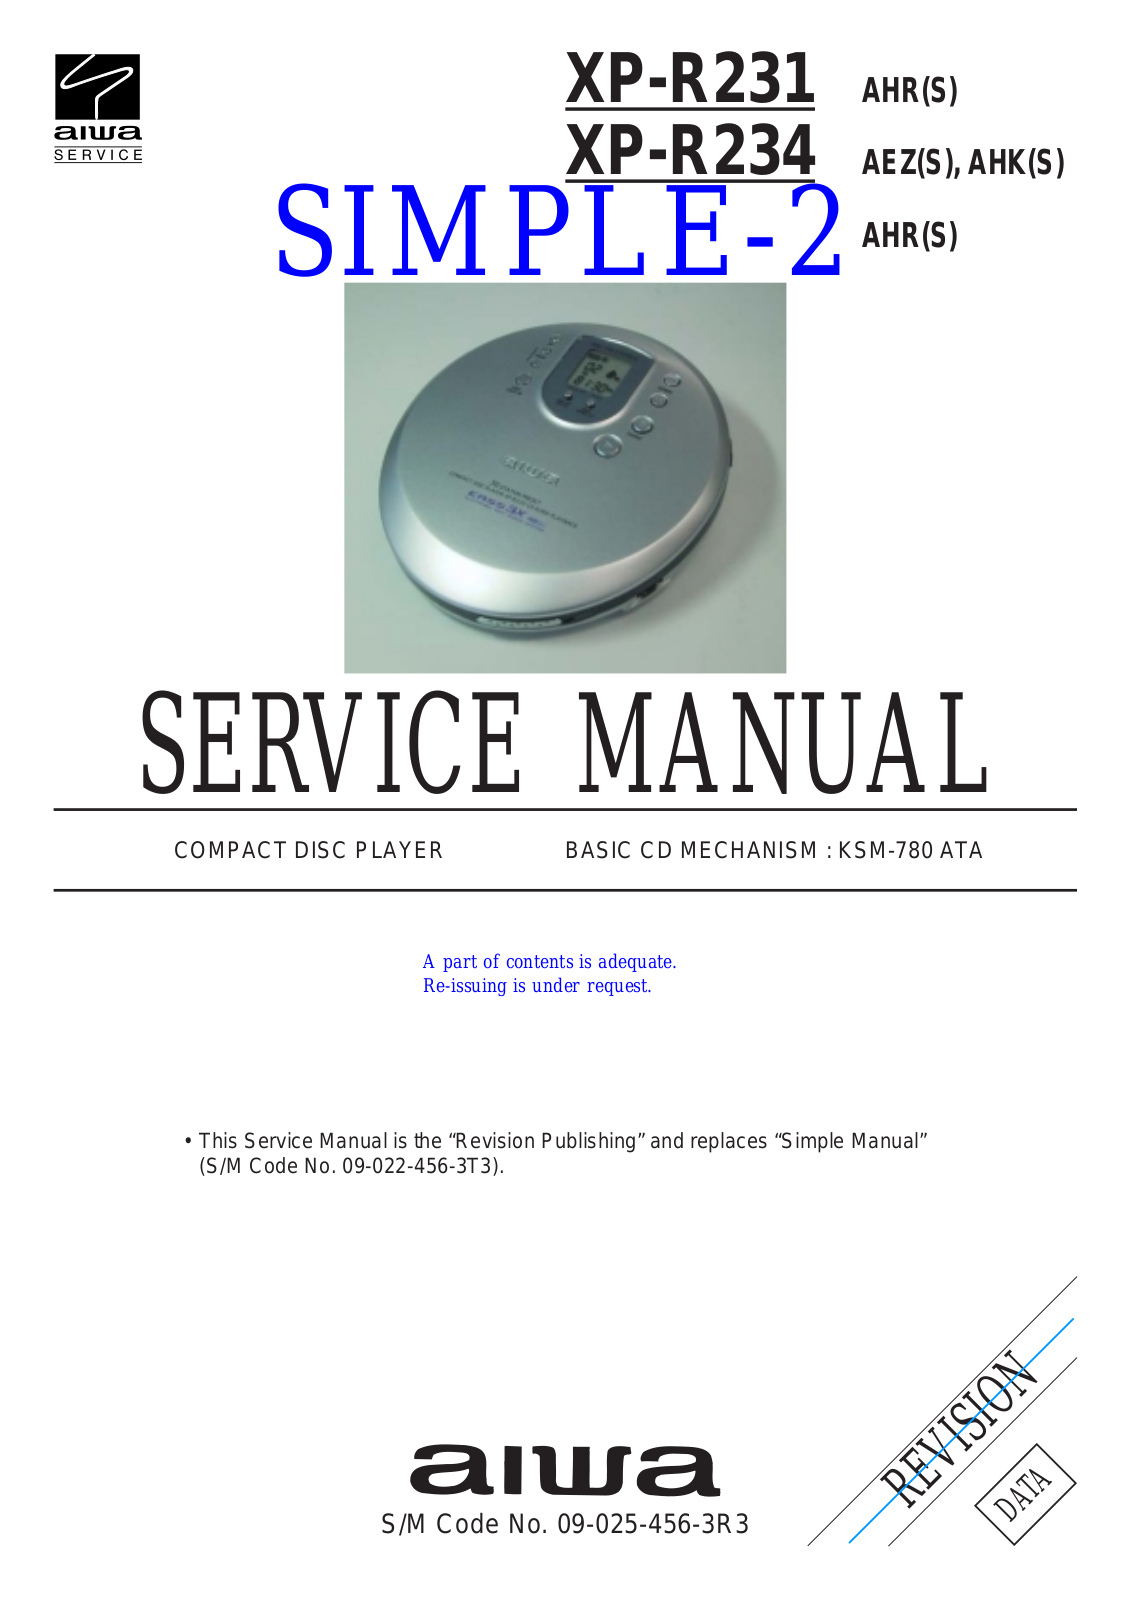 Aiwa XPR-231, XPR-234 Service manual